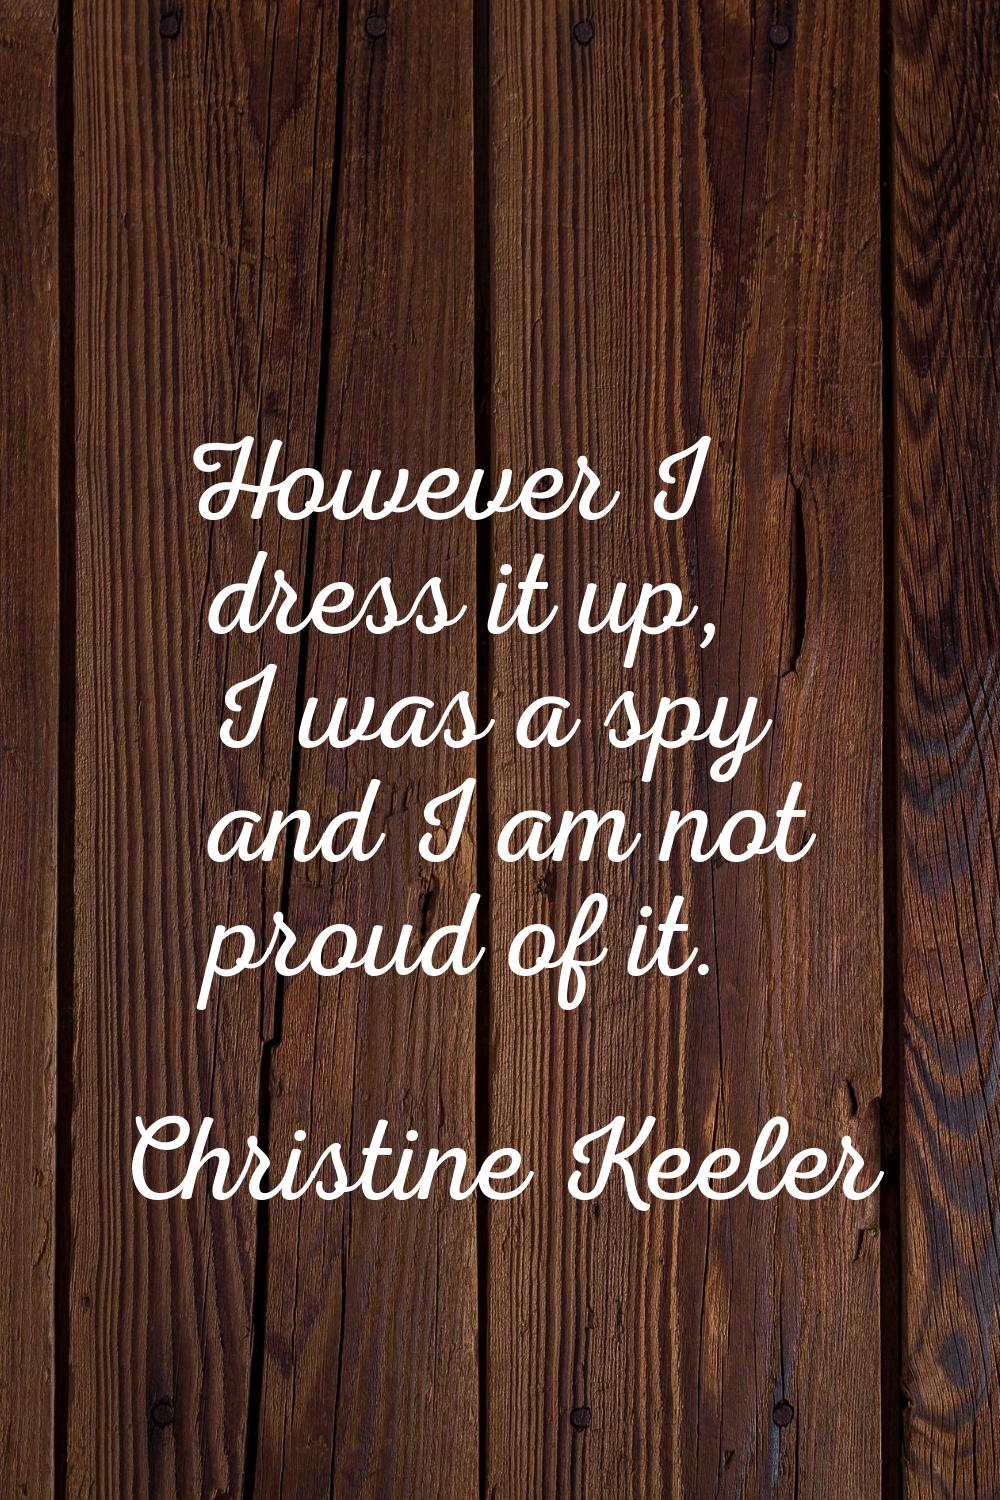 However I dress it up, I was a spy and I am not proud of it.